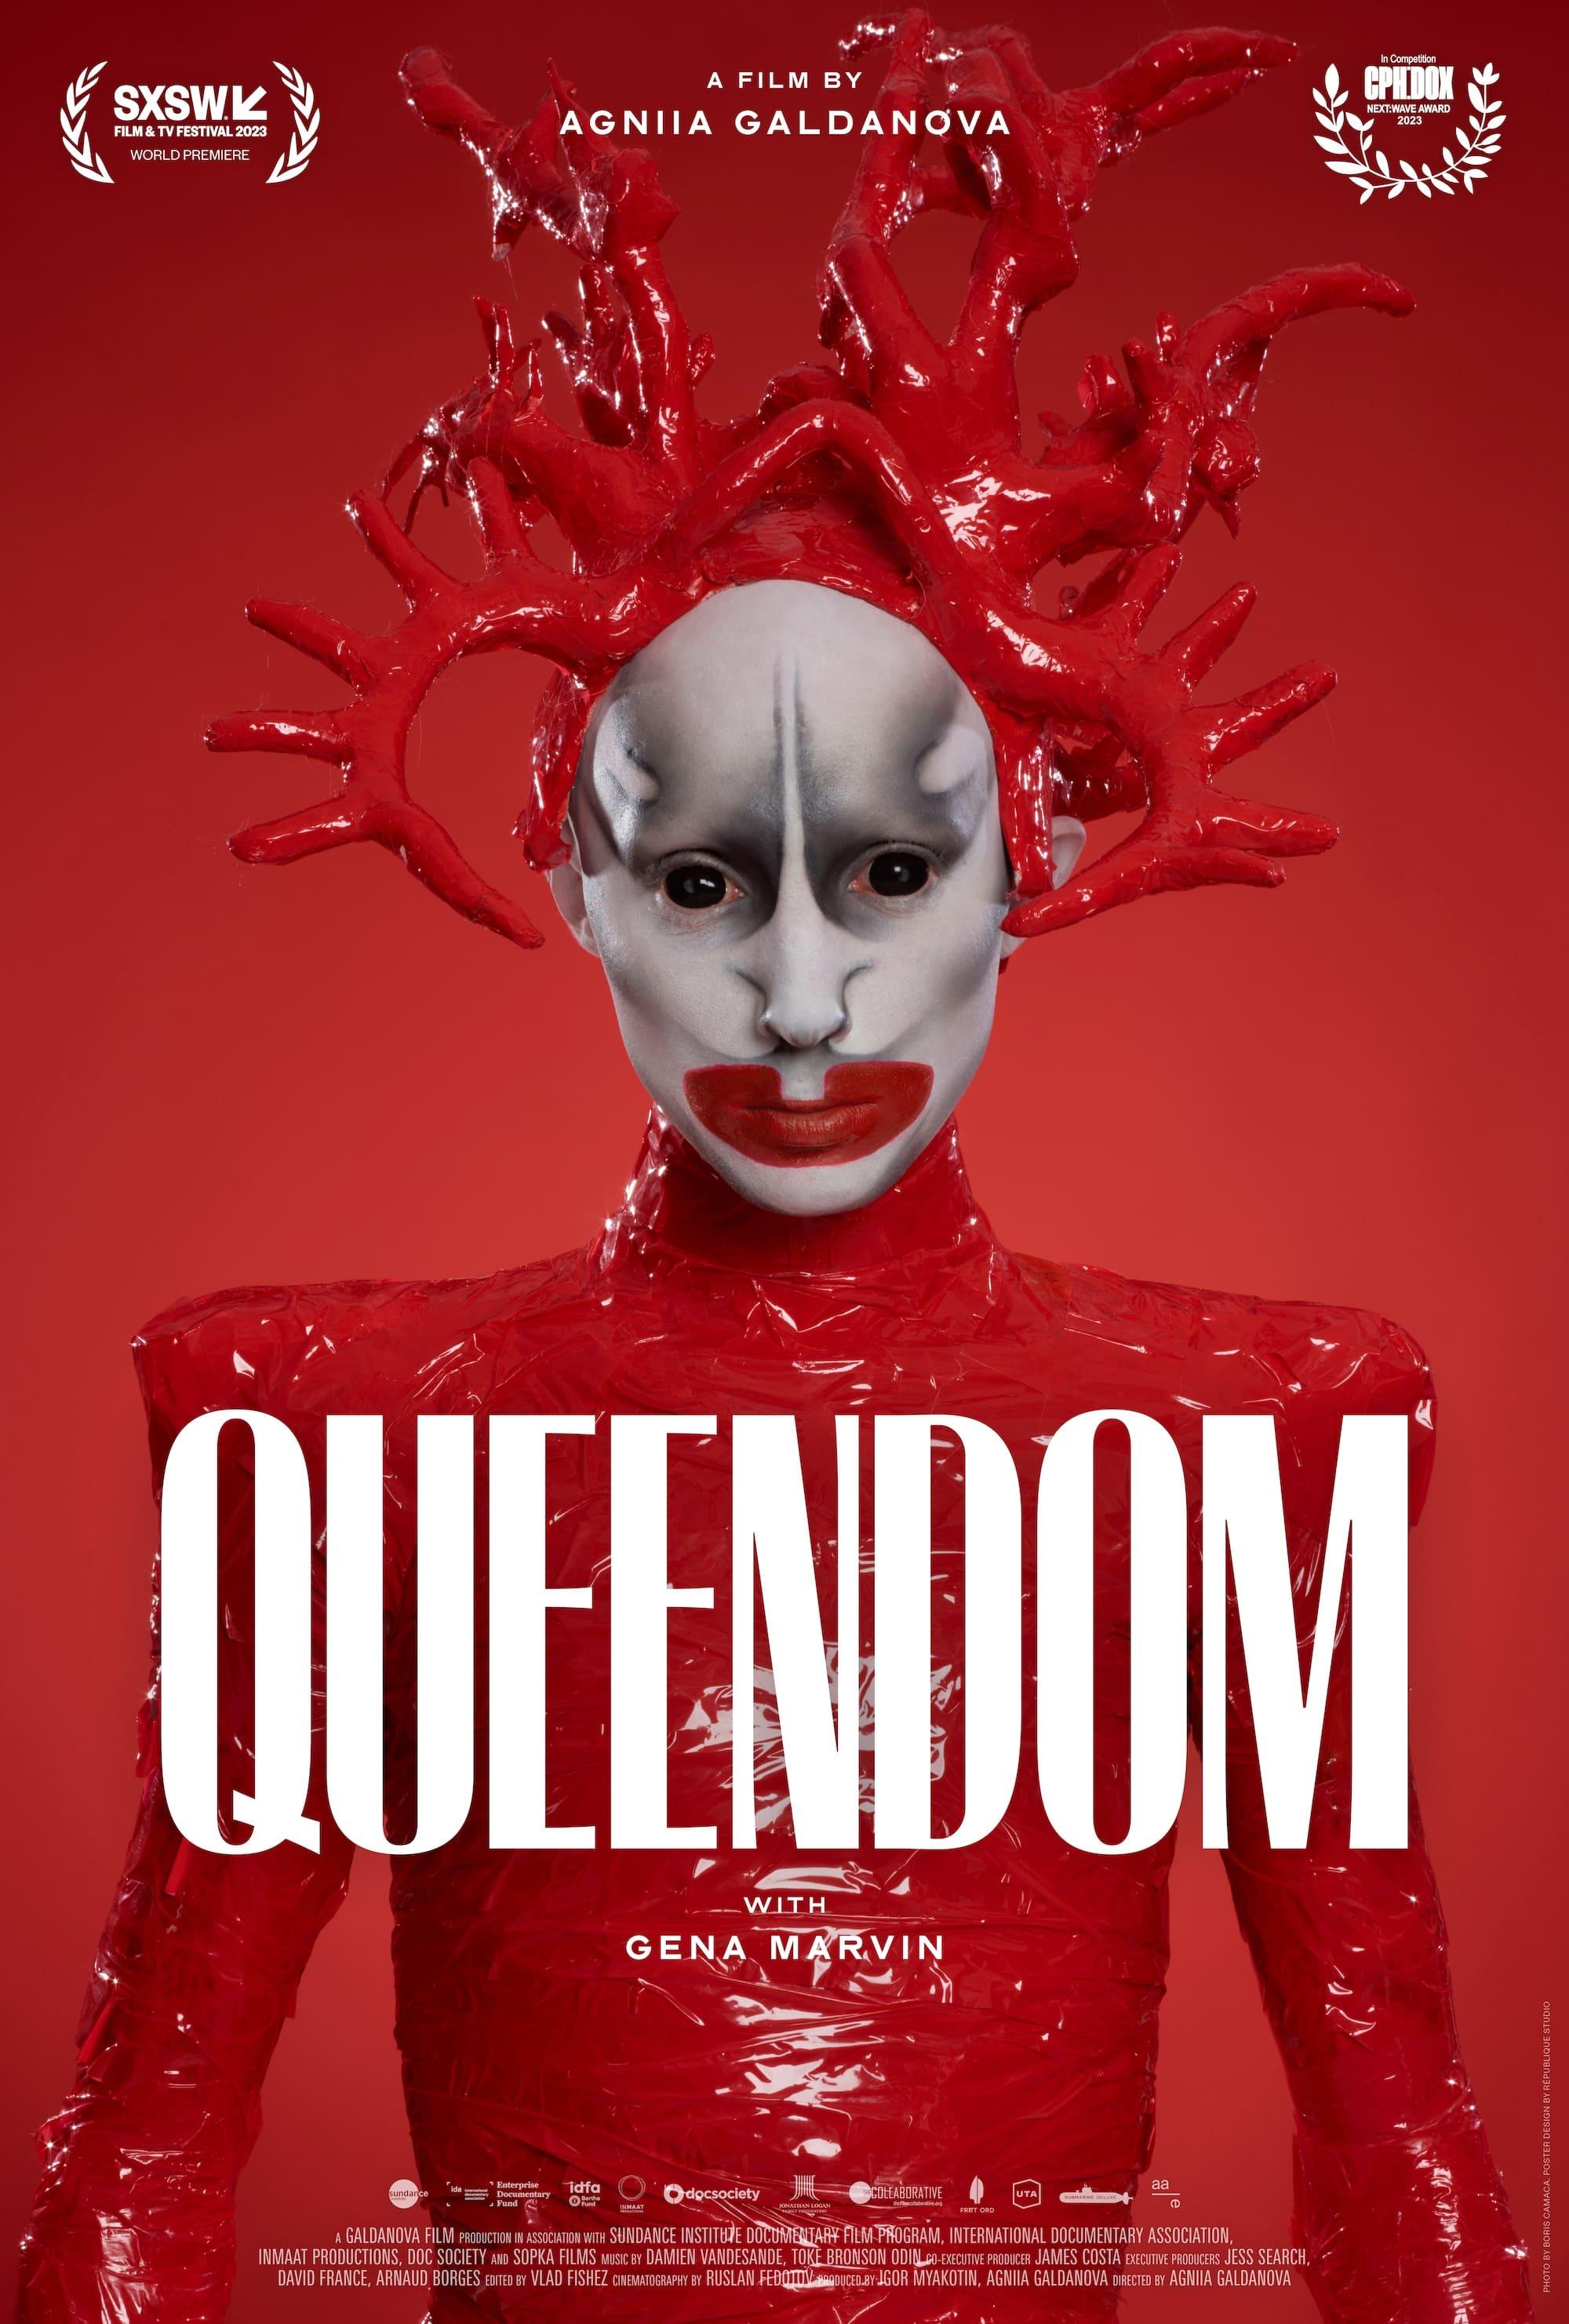 Queendom poster